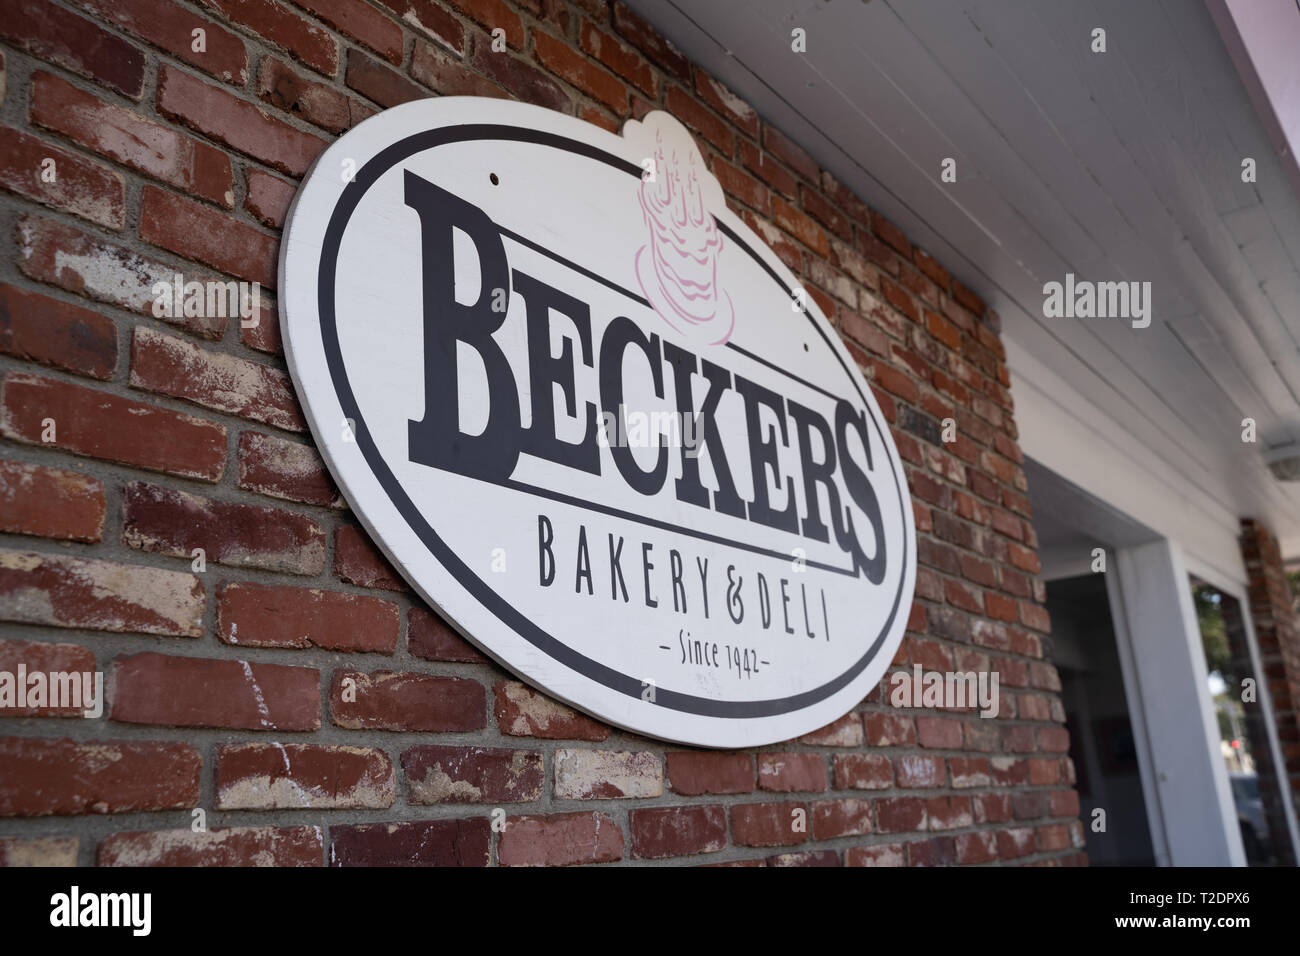 Manhattan Beach, California - Marzo 26, 2019: segno per Beckers panetteria e Deli nel centro cittadino di Manhattan Beach in California del Sud Foto Stock